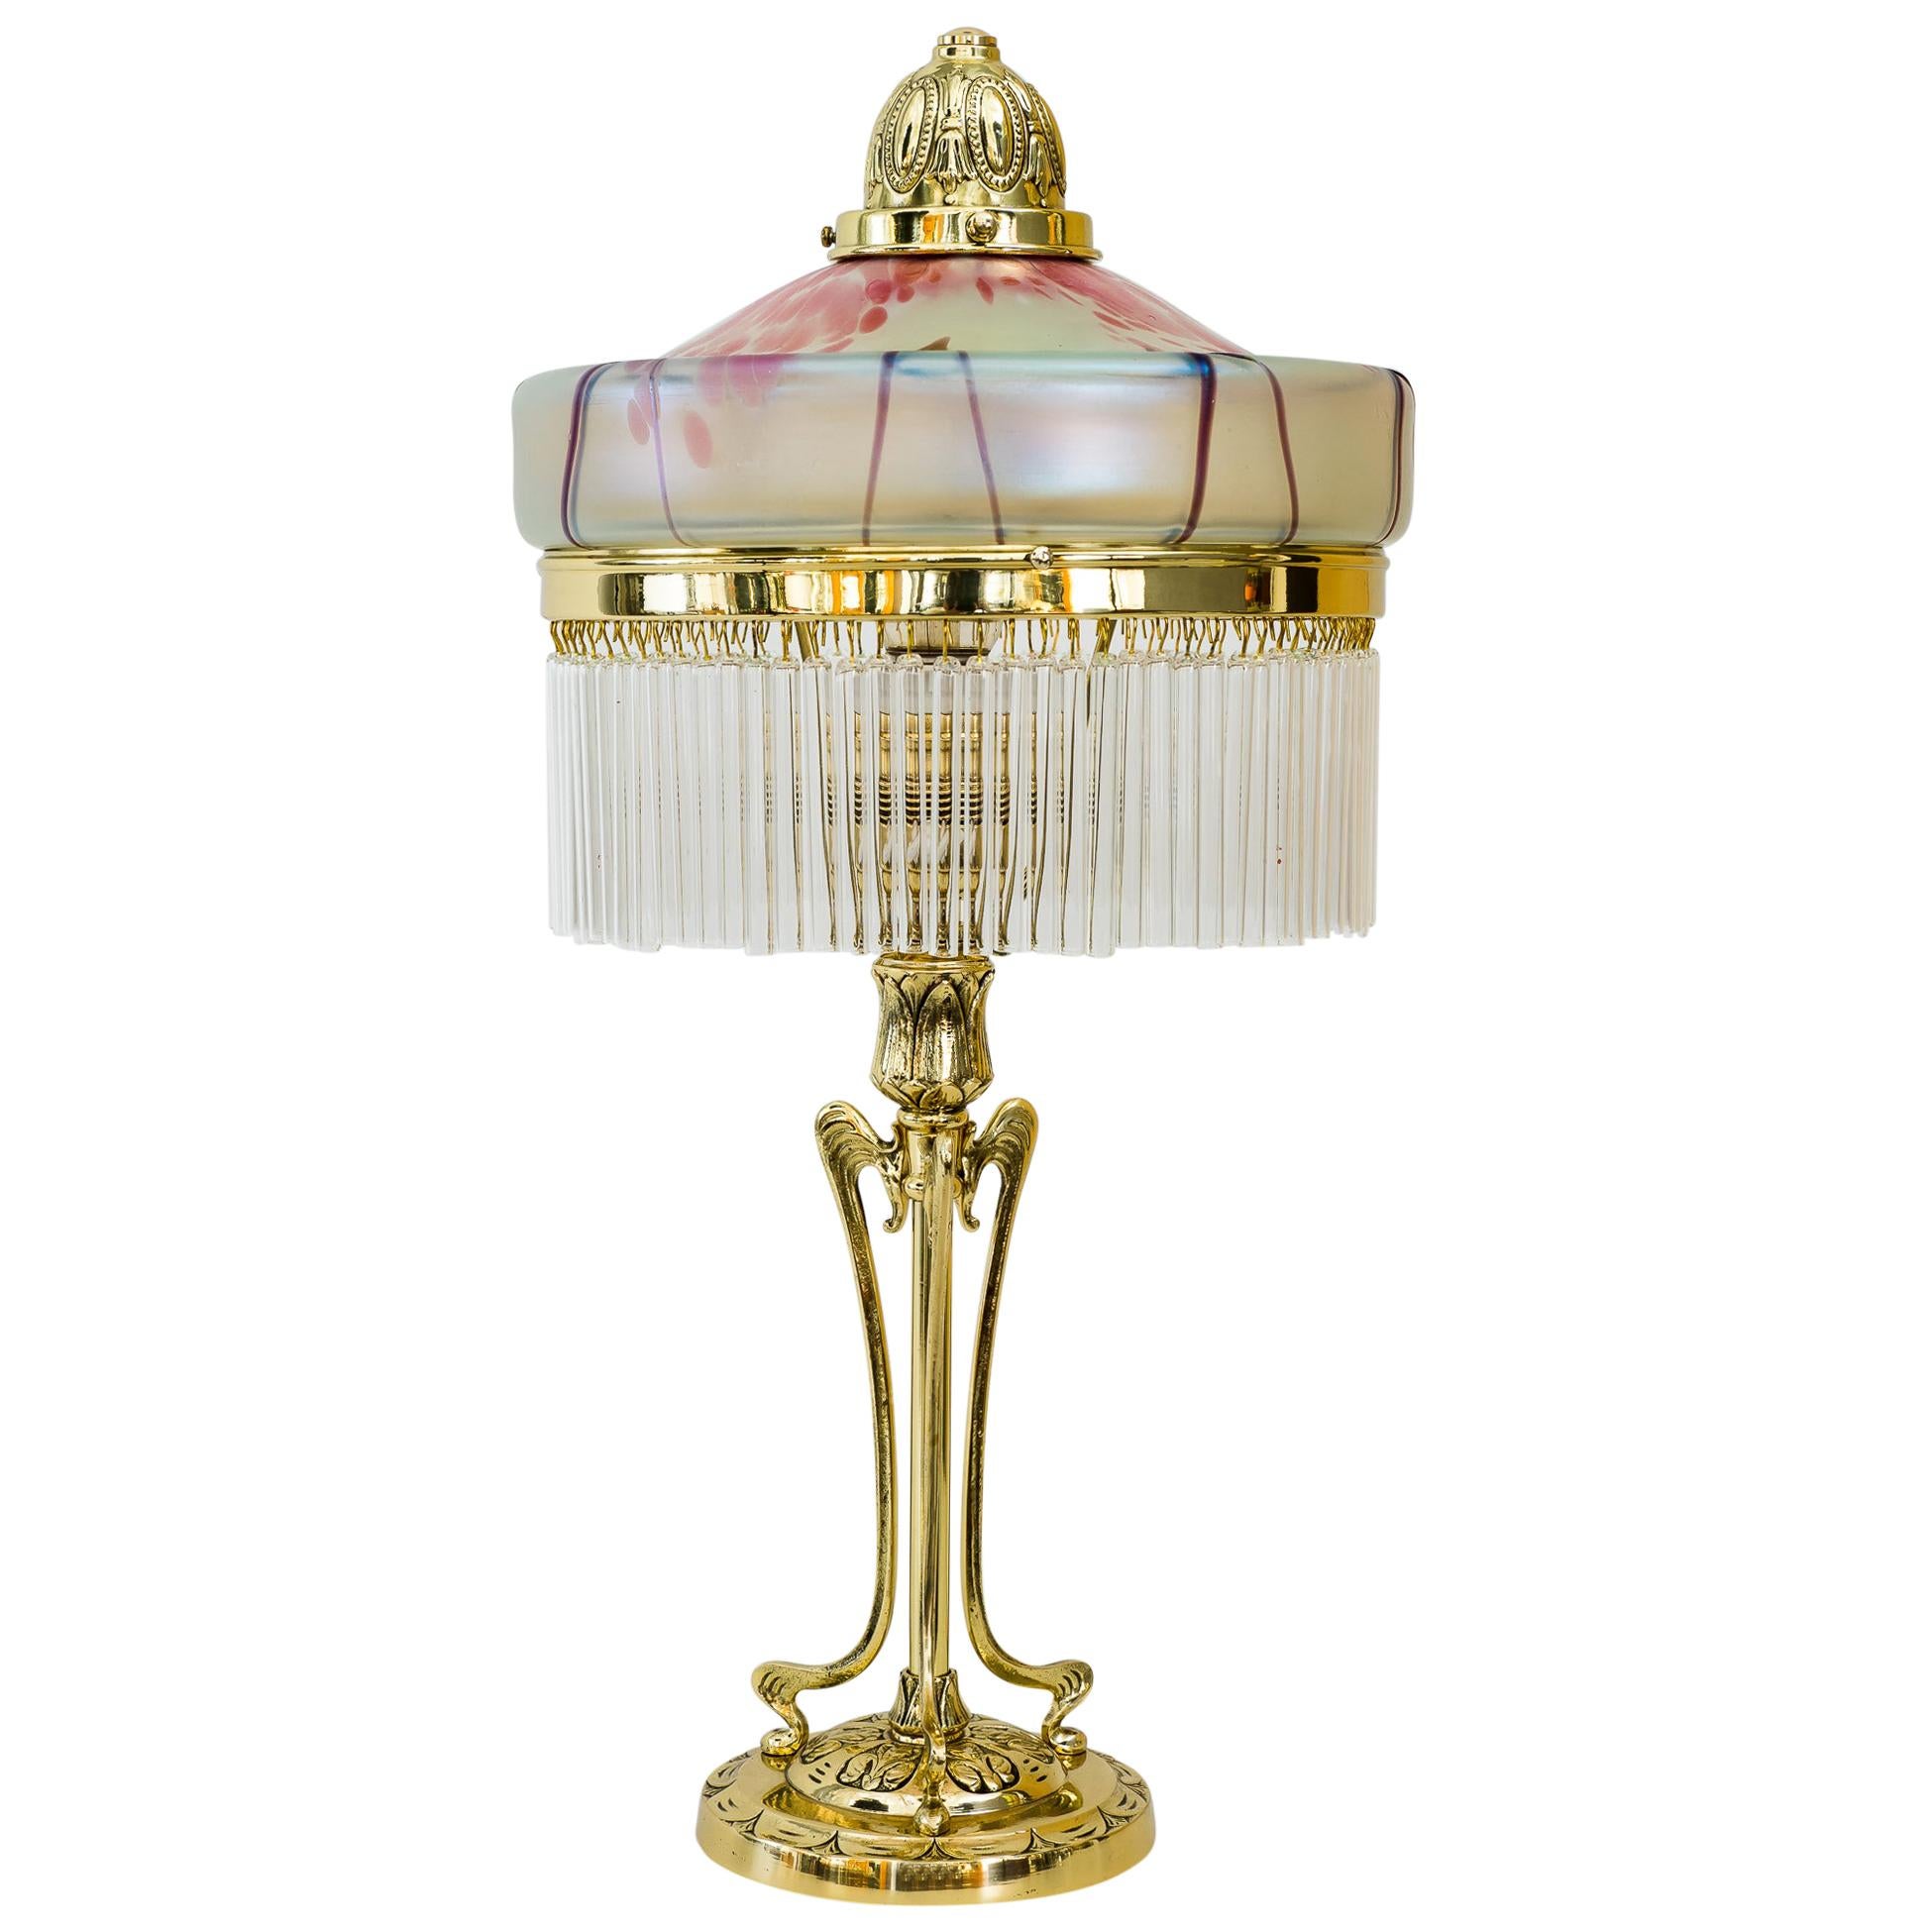 Jugendstil Table Lamp Around 1908 with Original Palme Koenig Glass Shade